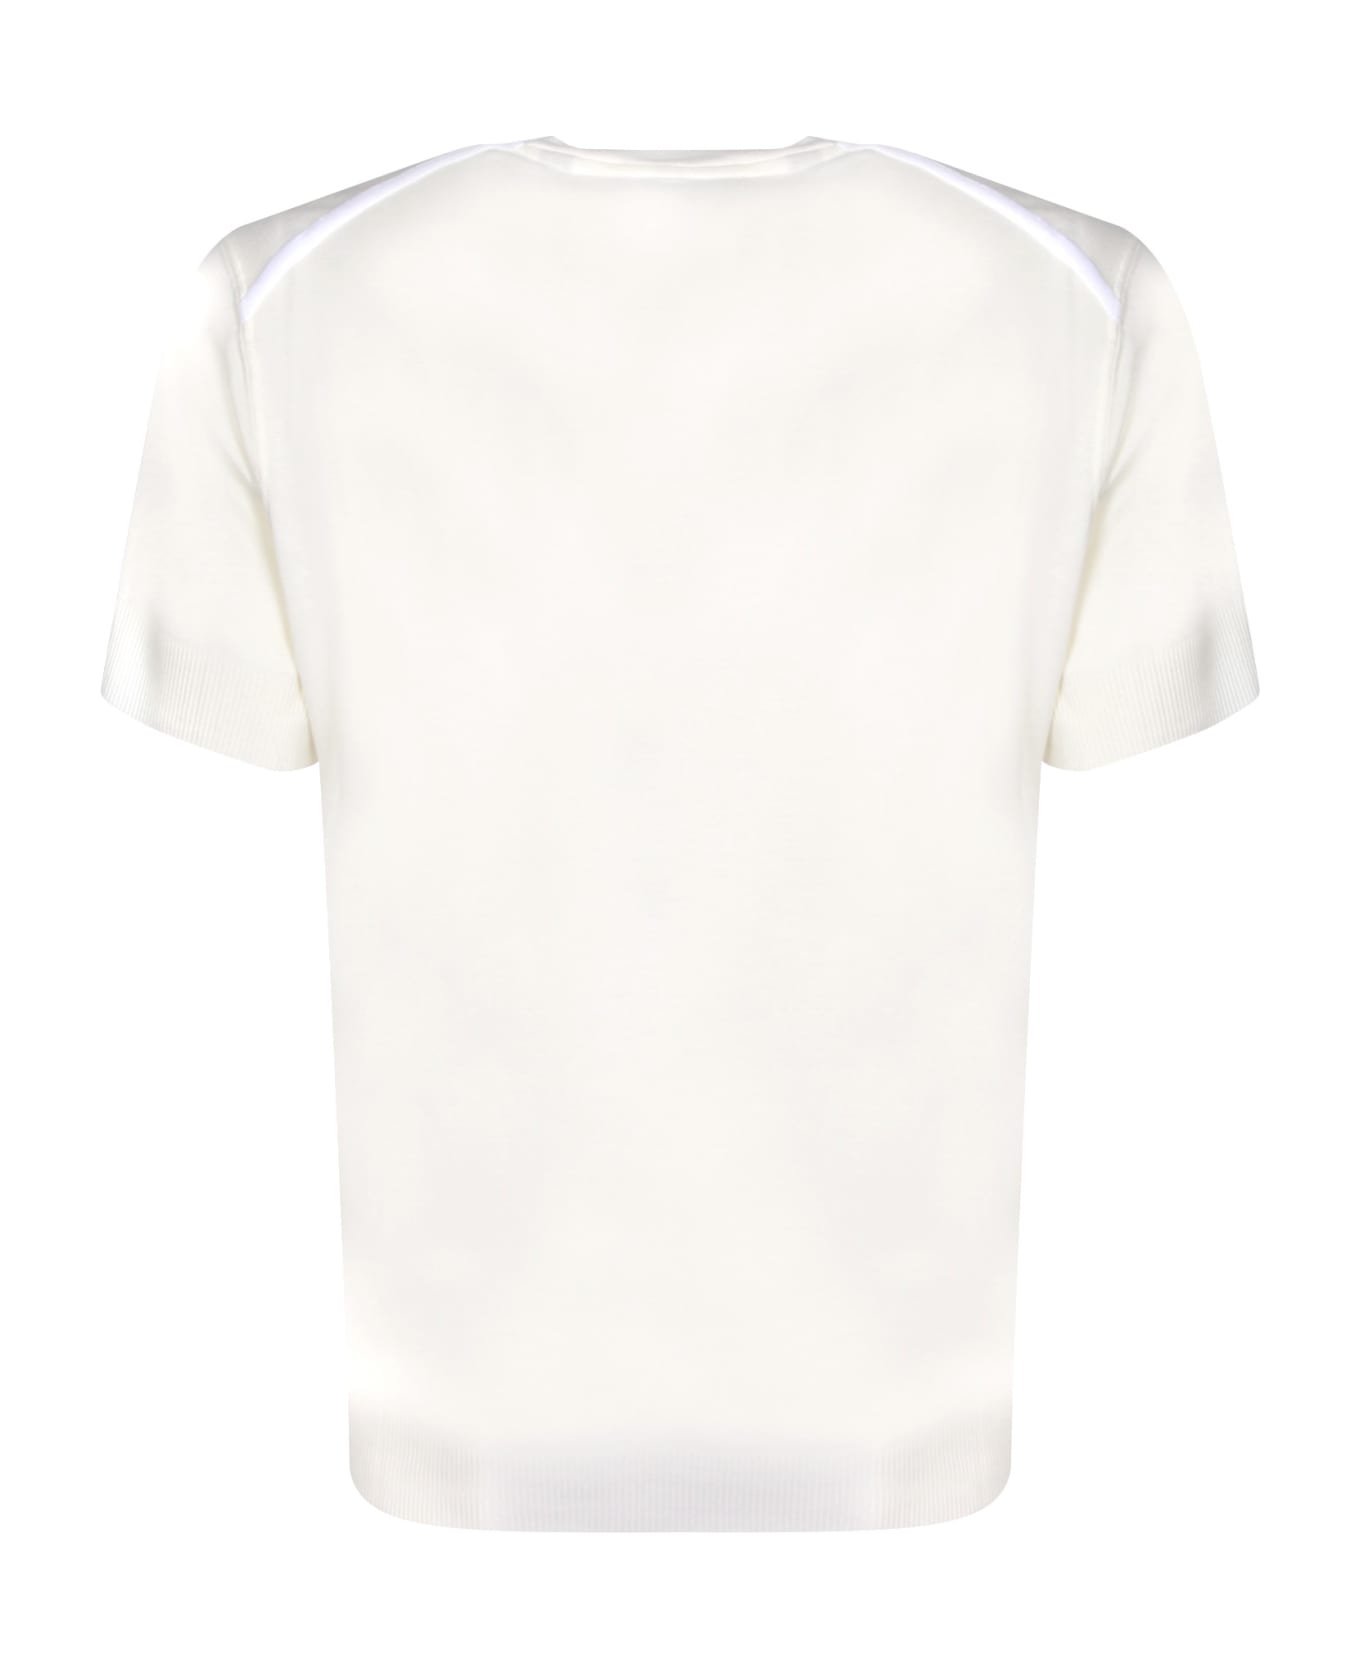 Tom Ford Ribber White T-shirt - White シャツ